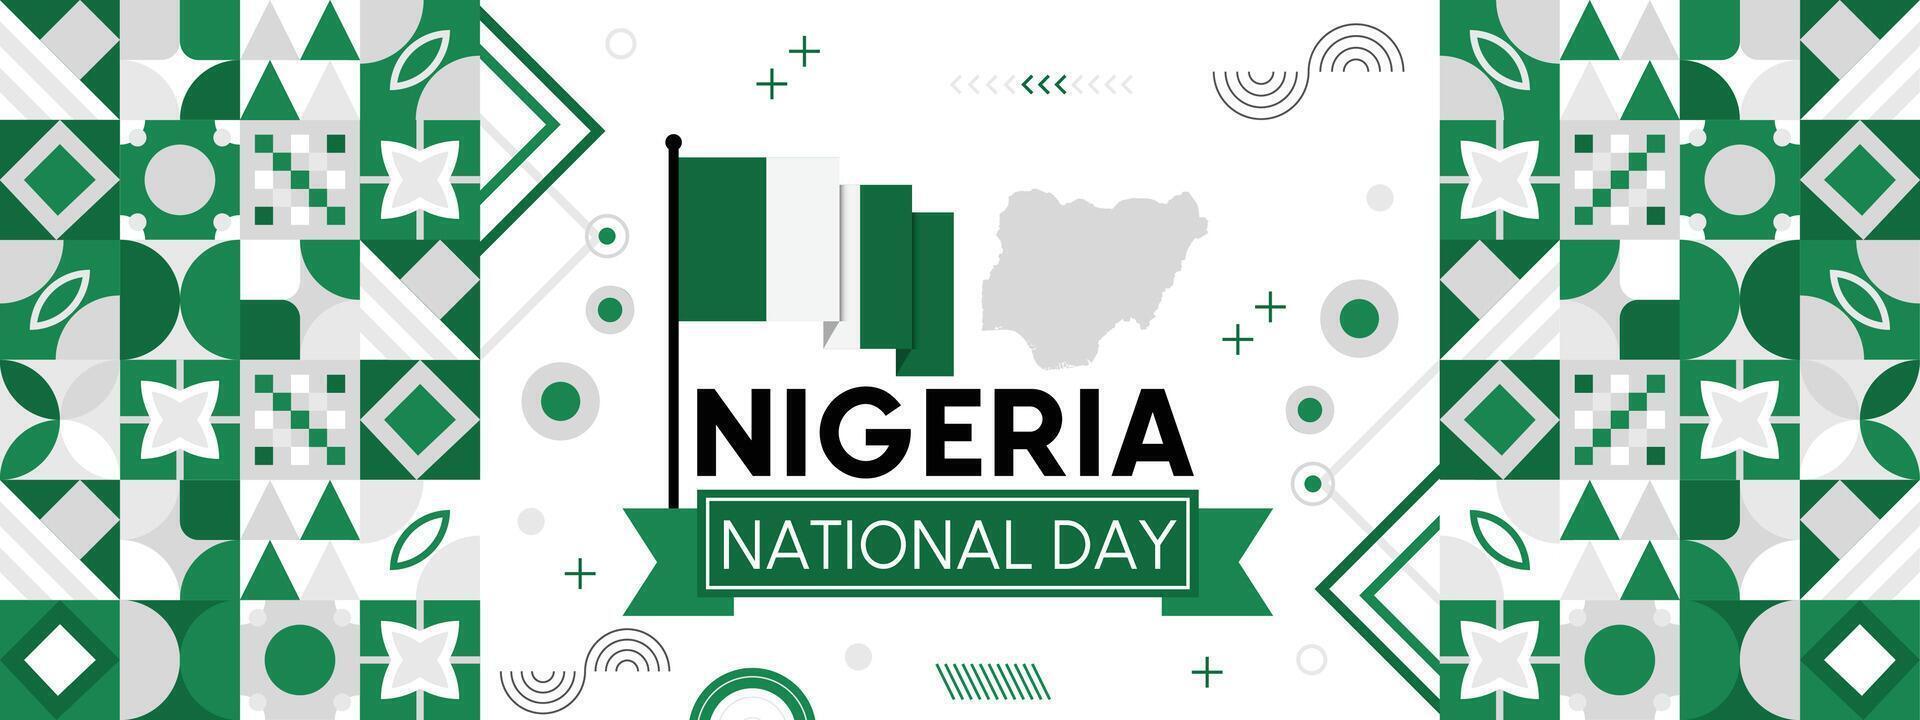 Nigeria nacional día bandera con nigeriano bandera colores antecedentes. creativo independencia día bandera, póster, tarjeta, bandera, plantilla, para celebrar anual vector